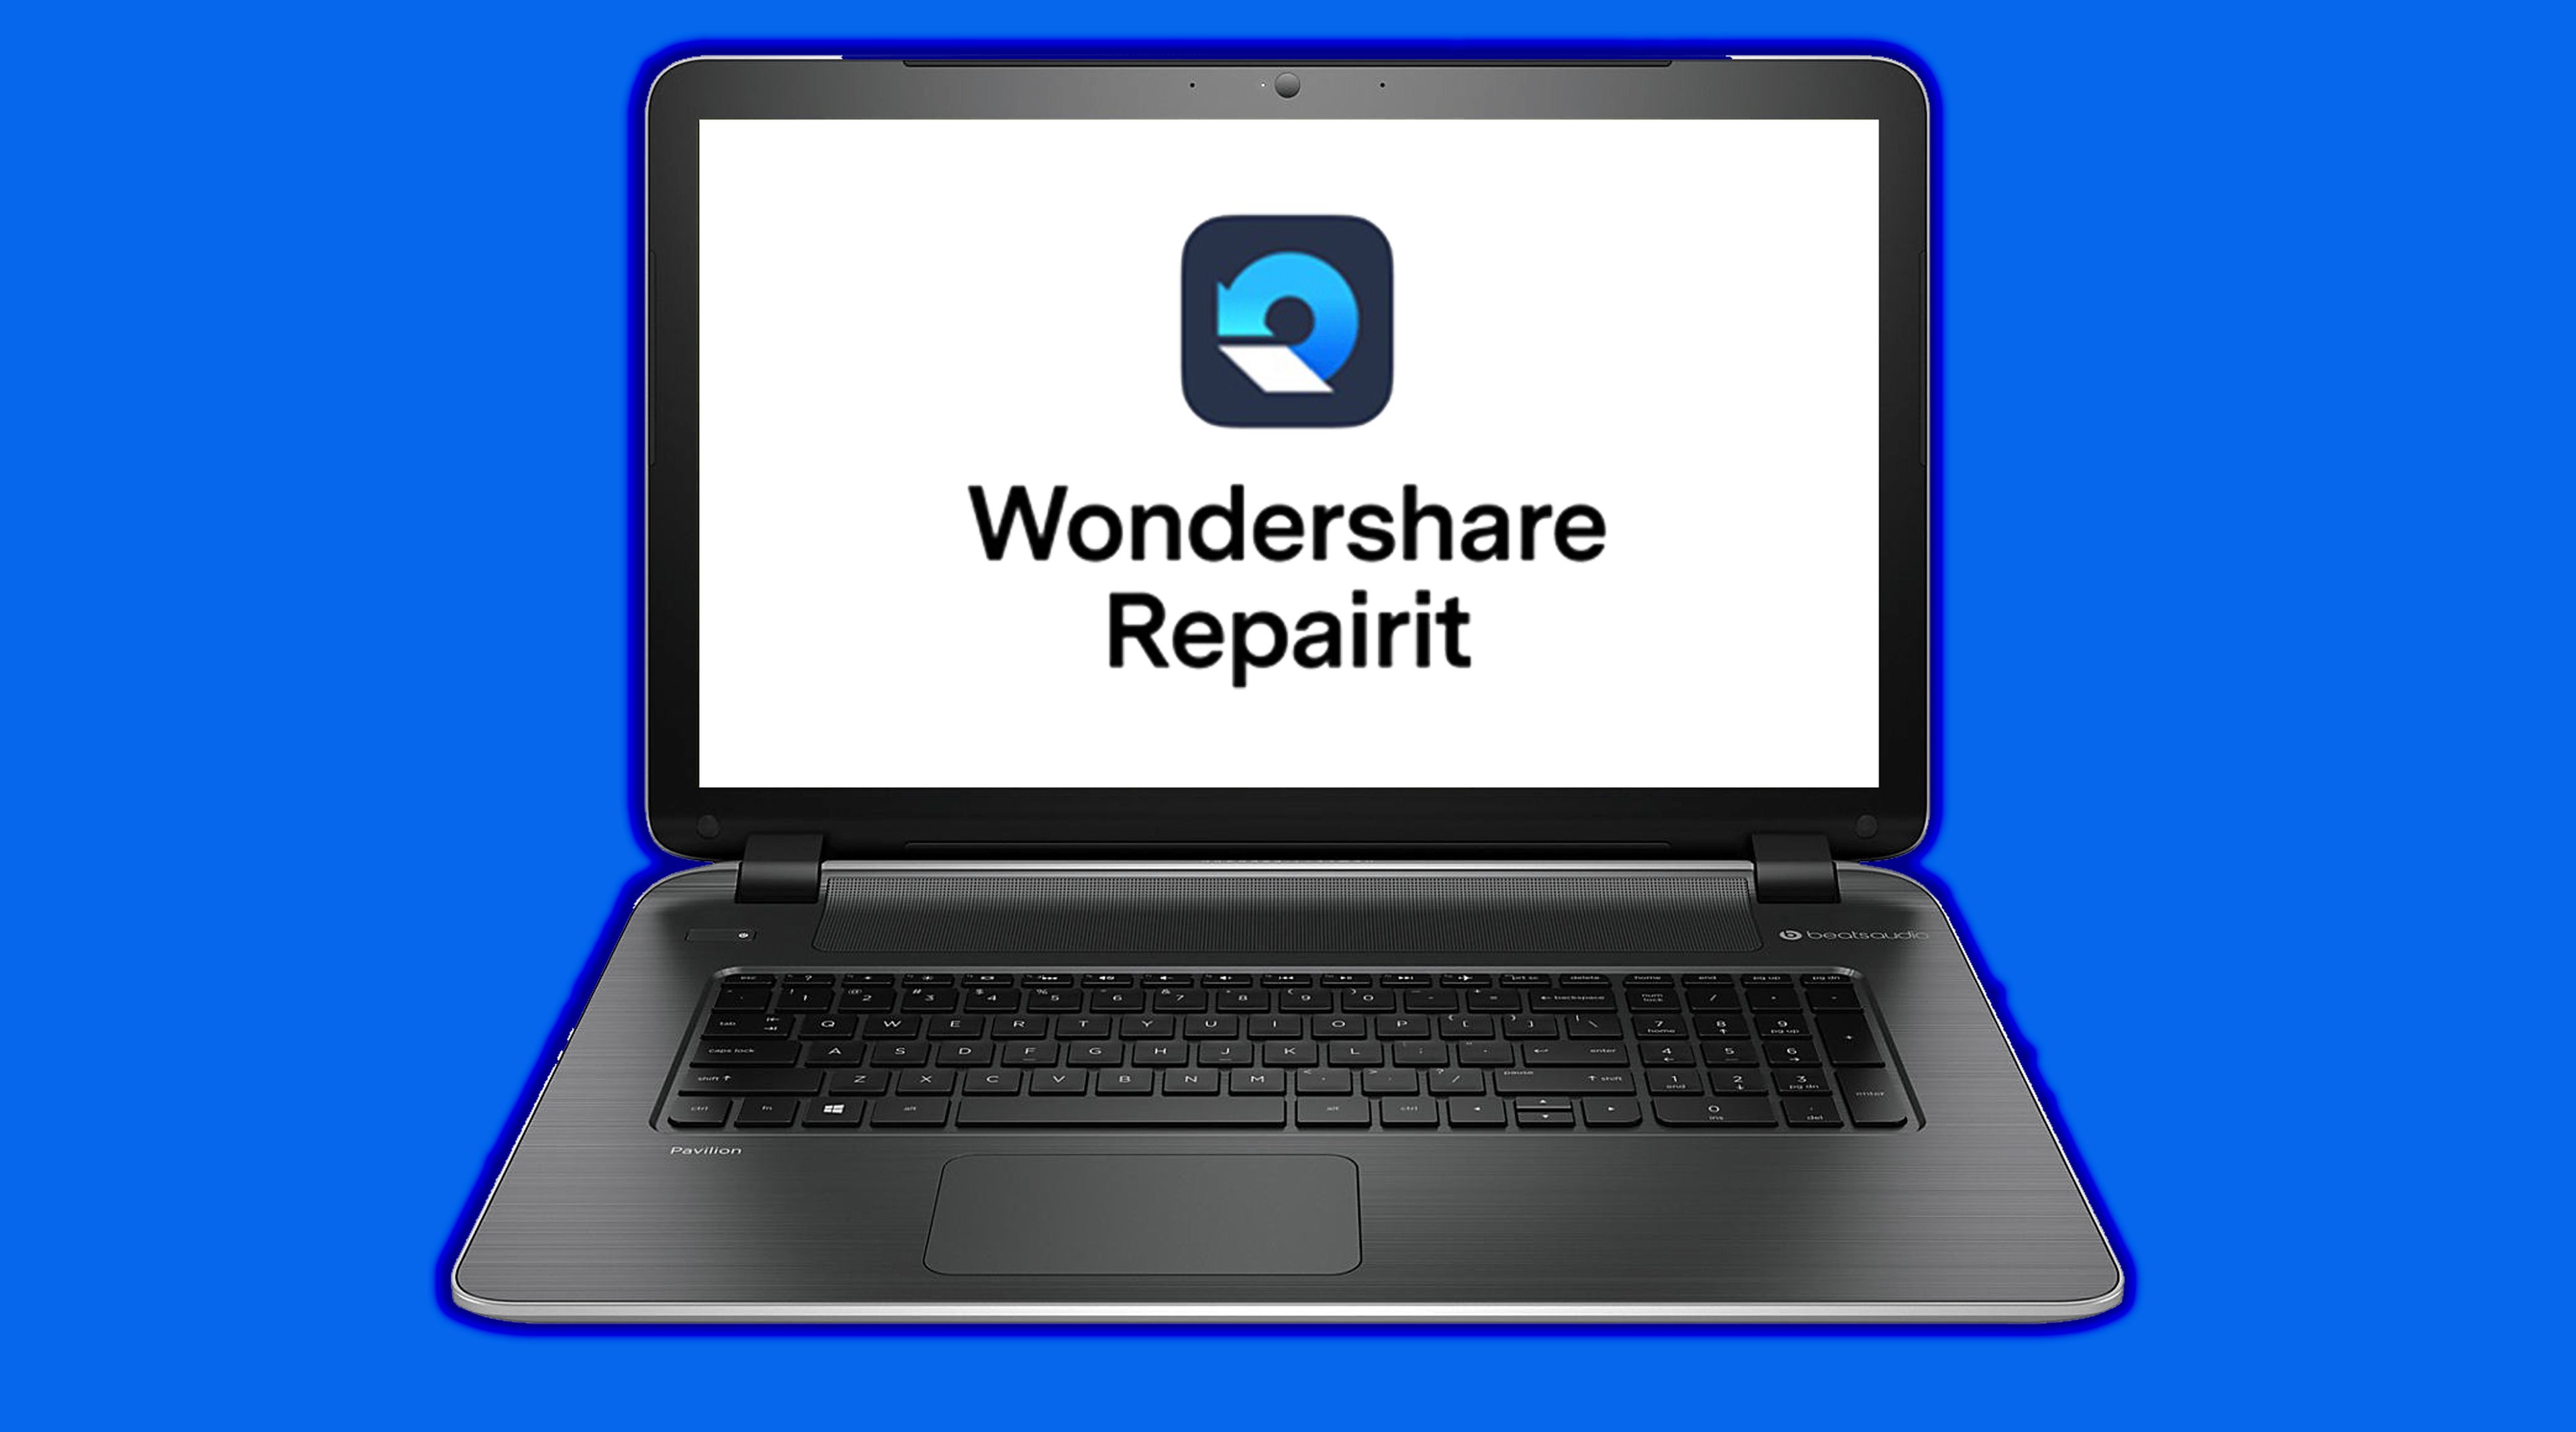 : Wondershare Repairit